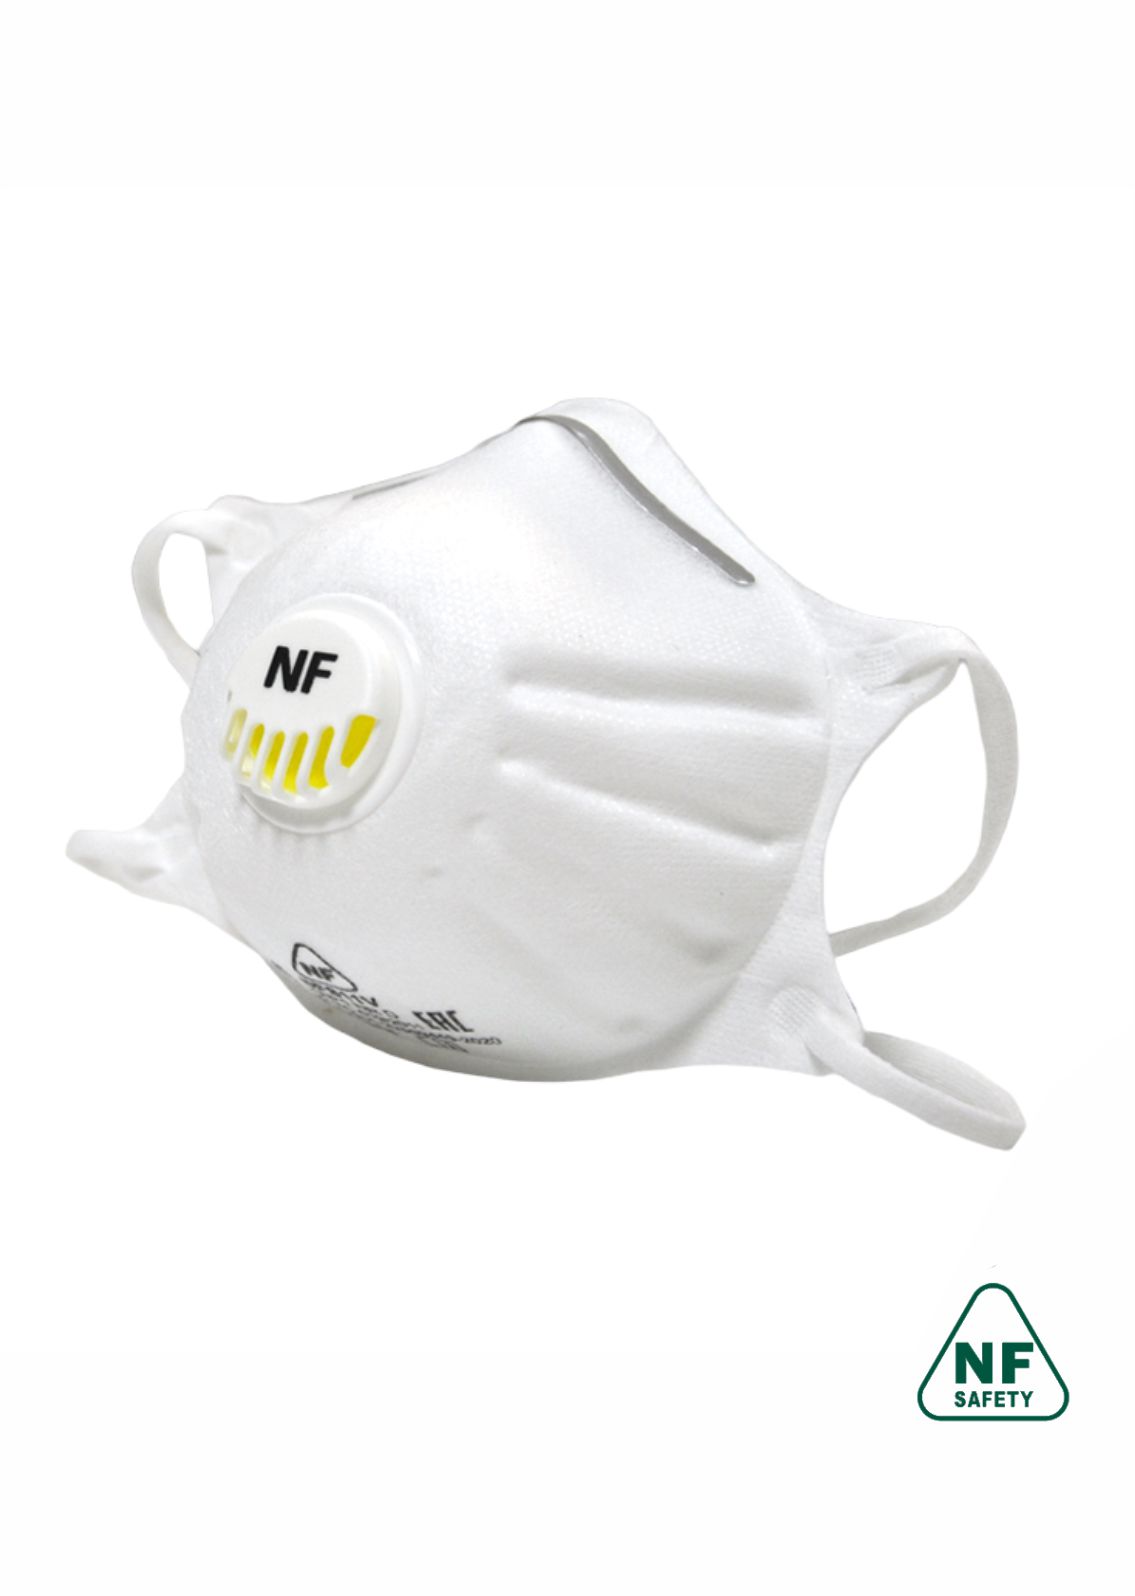 Полумаска противоаэрозольная фильтрующая (респиратор) NF811V FFP1 NR D    size-S